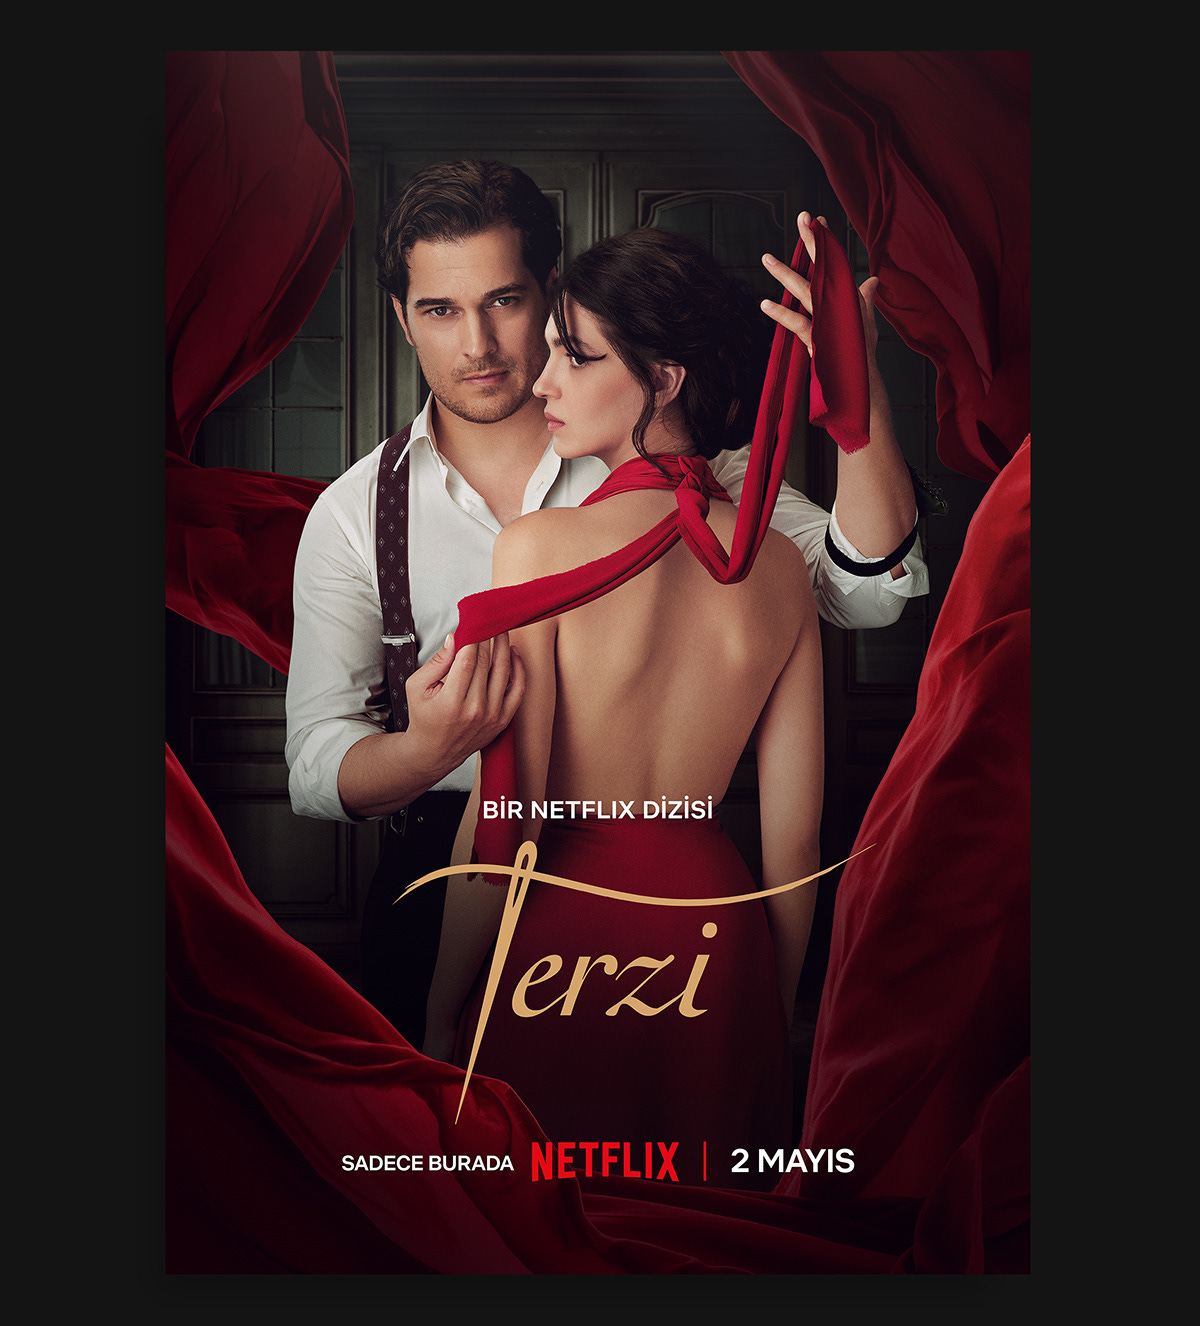 Terzi promotional image